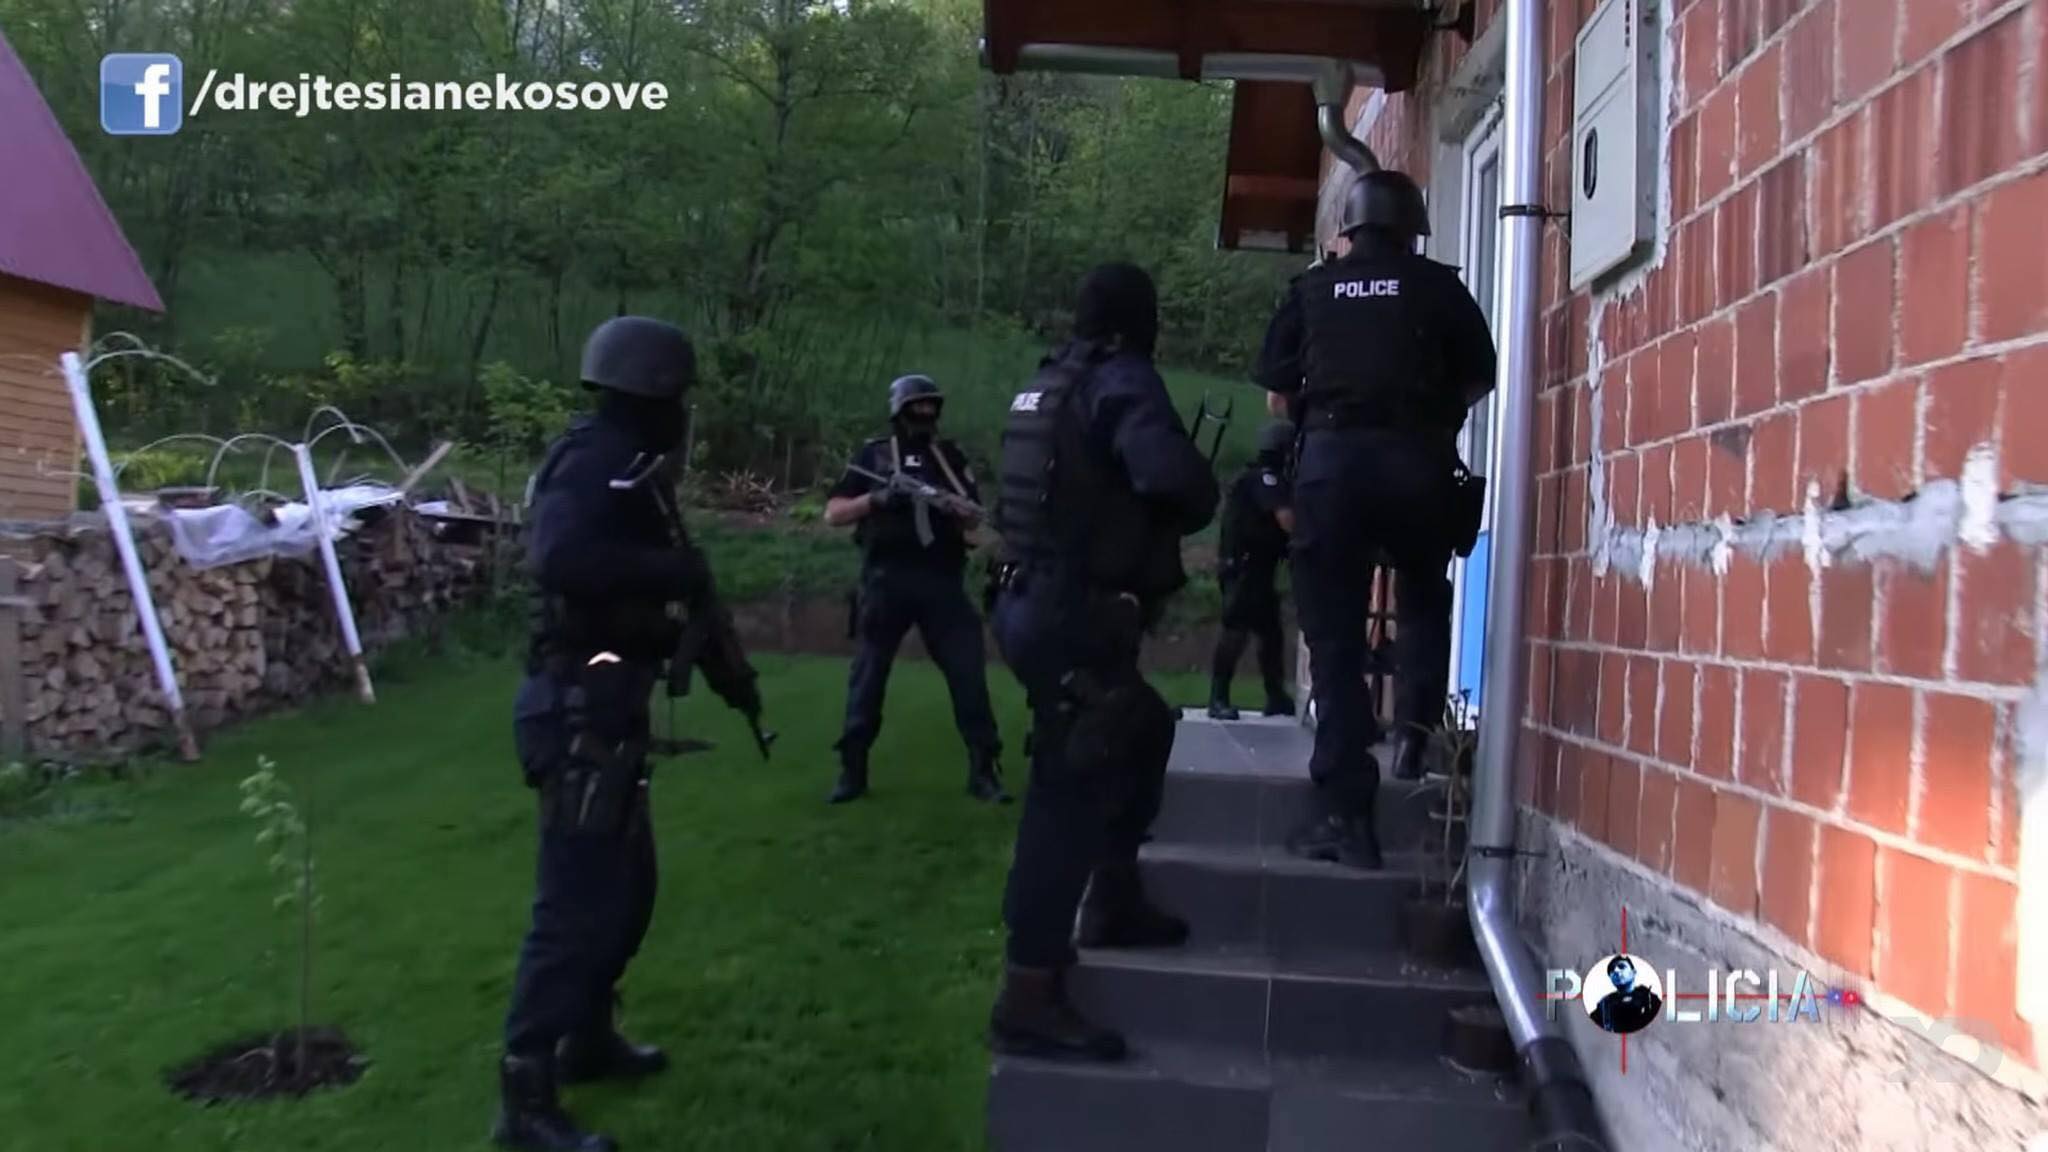  Podujevë: Bastiset një shtëpi, Policia gjen një AK 47